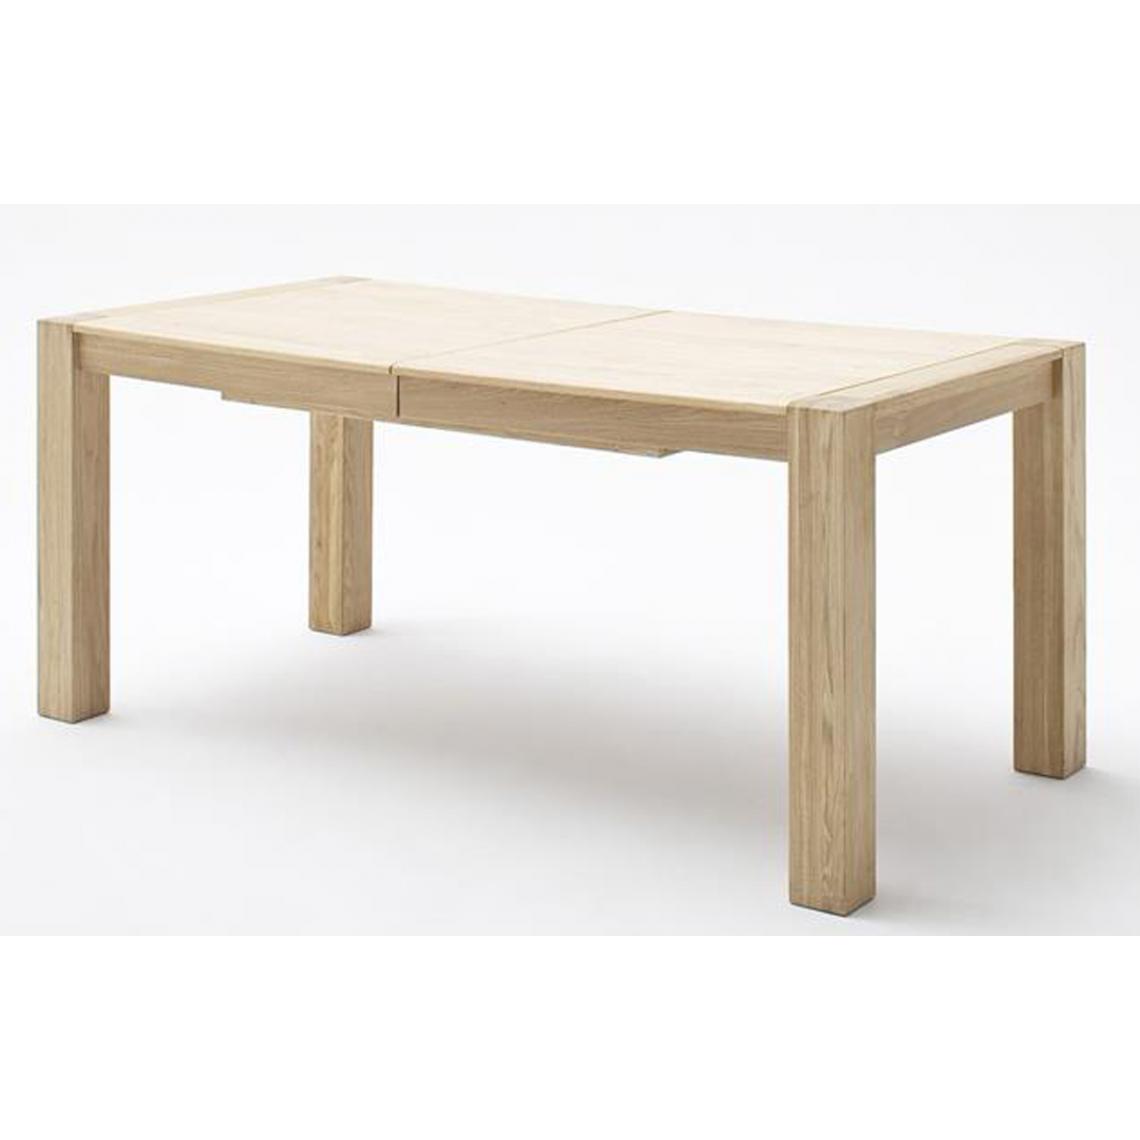 Pegane - Table à manger extensible en bois massif chêne bianco - L.180-230 x H.78 x P.90 cm - Tables à manger